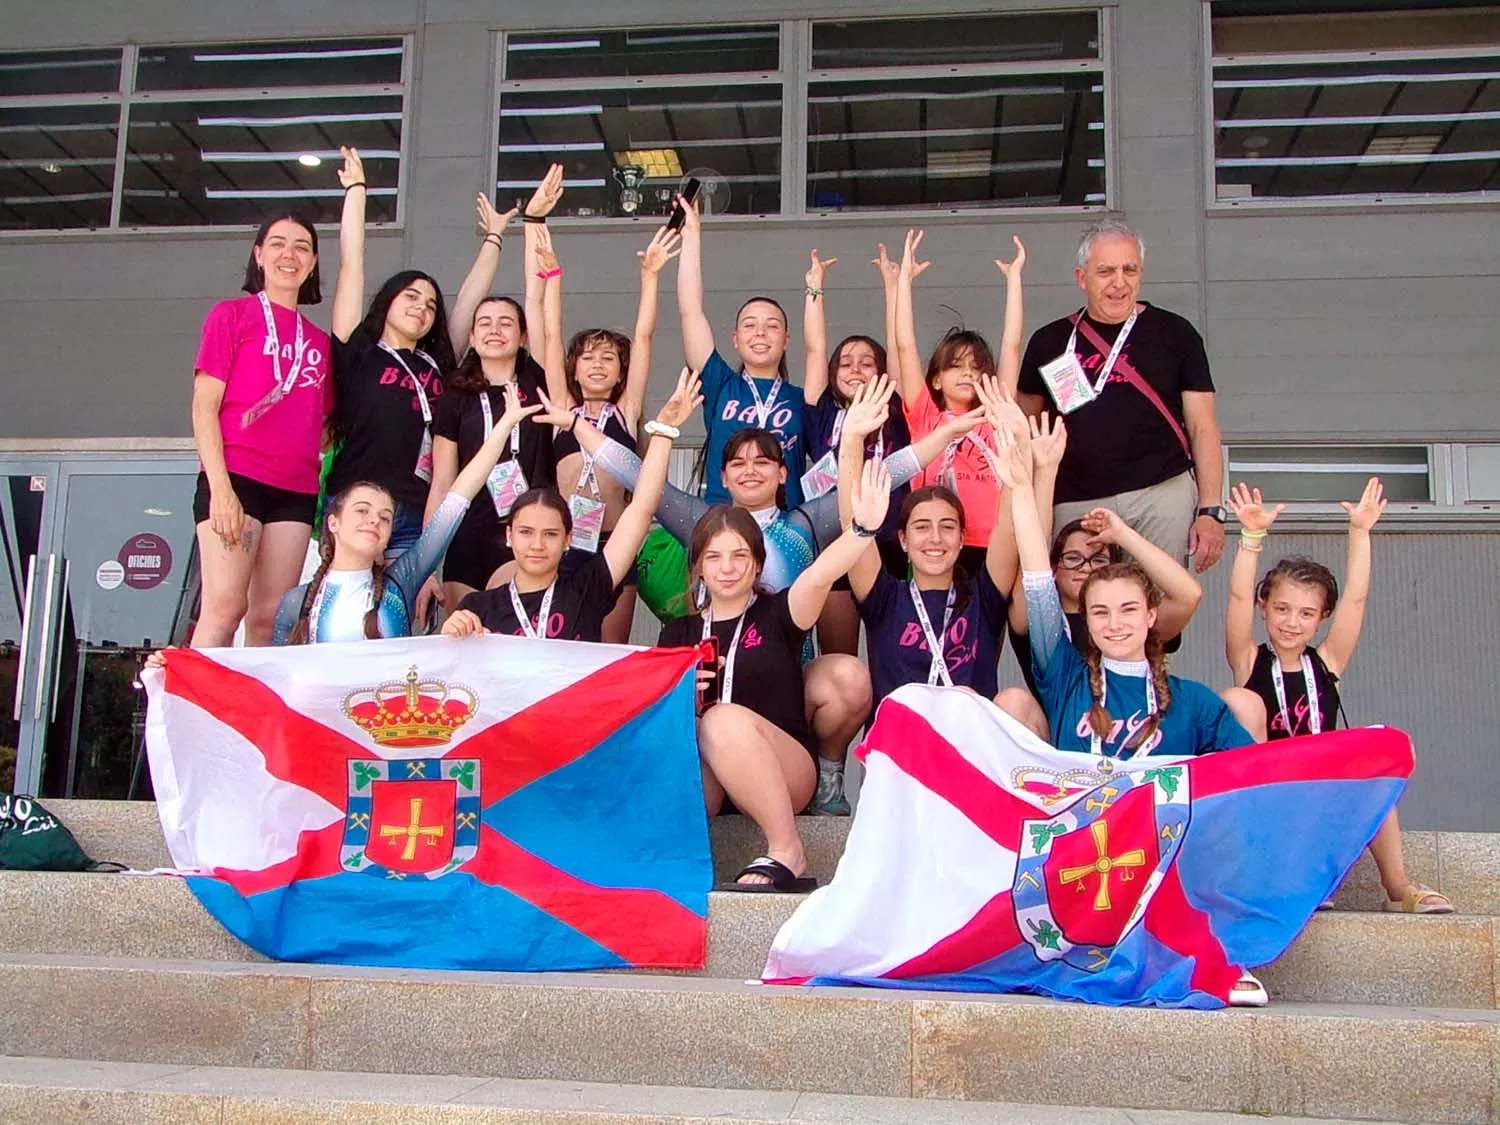 13 gimnastas bercianas del Club Bayo del Sil de Ponferrada participaron en el Campeonato Nacional de Gimnasia Artística 